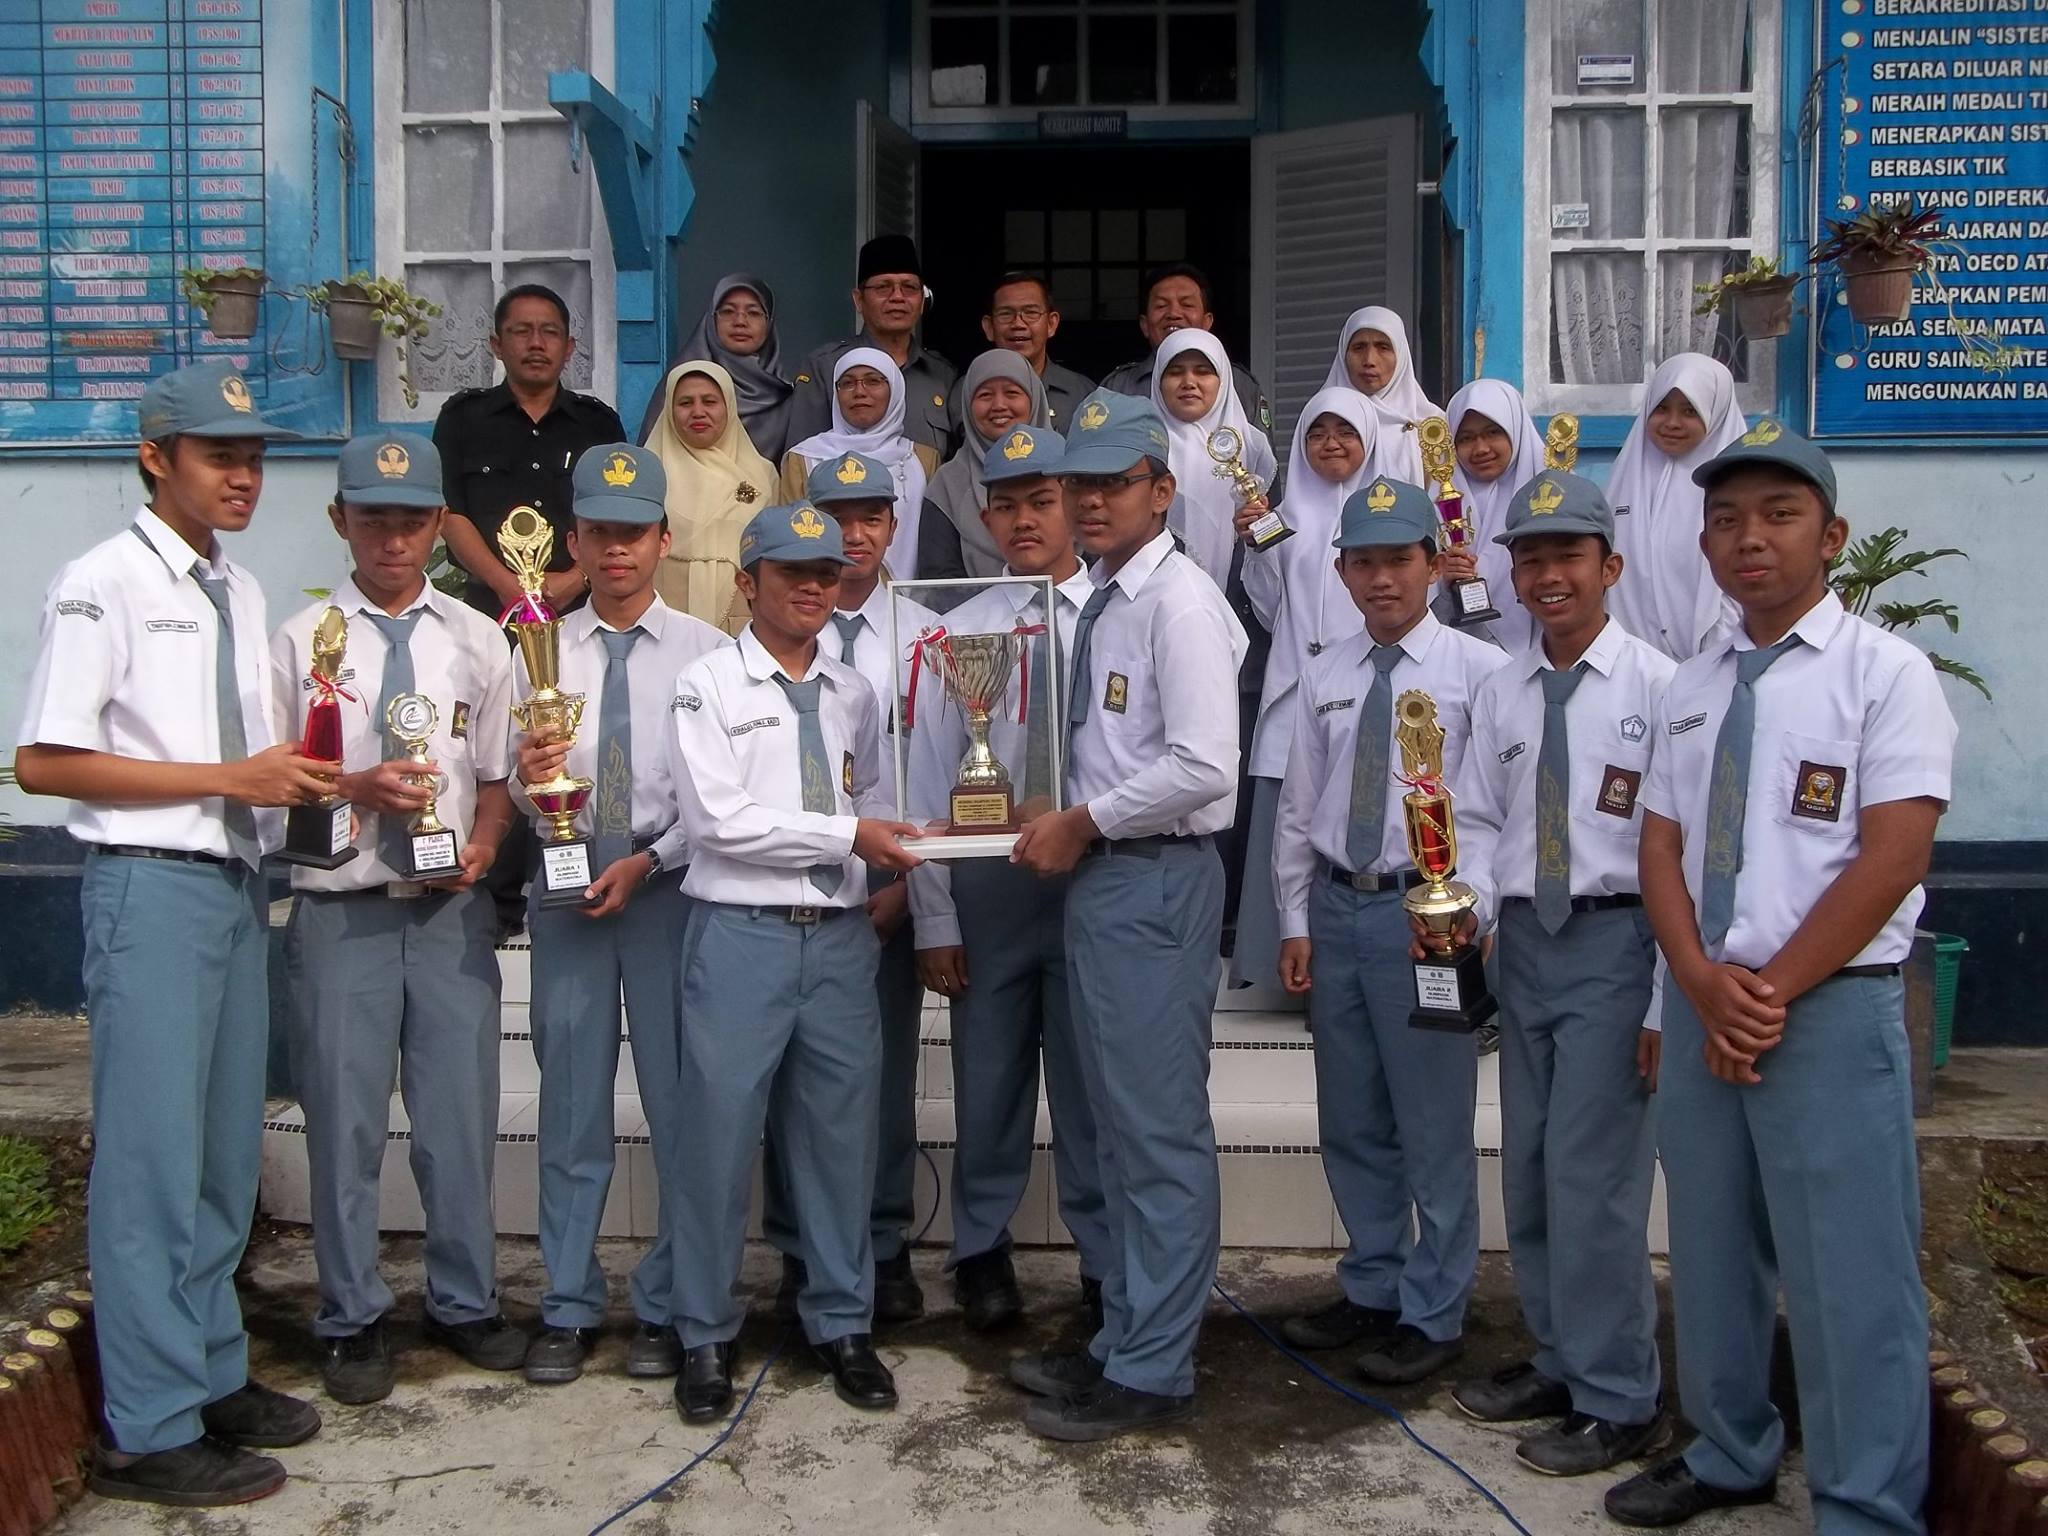 Para siswa dan guru SMA Negeri Padang Panjang, Sumatera Barat (Sumbar) saat foto bersama memegang piala dalam suatu kejuaraan dalam beberapa tahun terakhir. SMA Negeri 1 Padang Panjang salah satu sekolah peringkat pertama di Sumatera Barat dan urutan ke 7